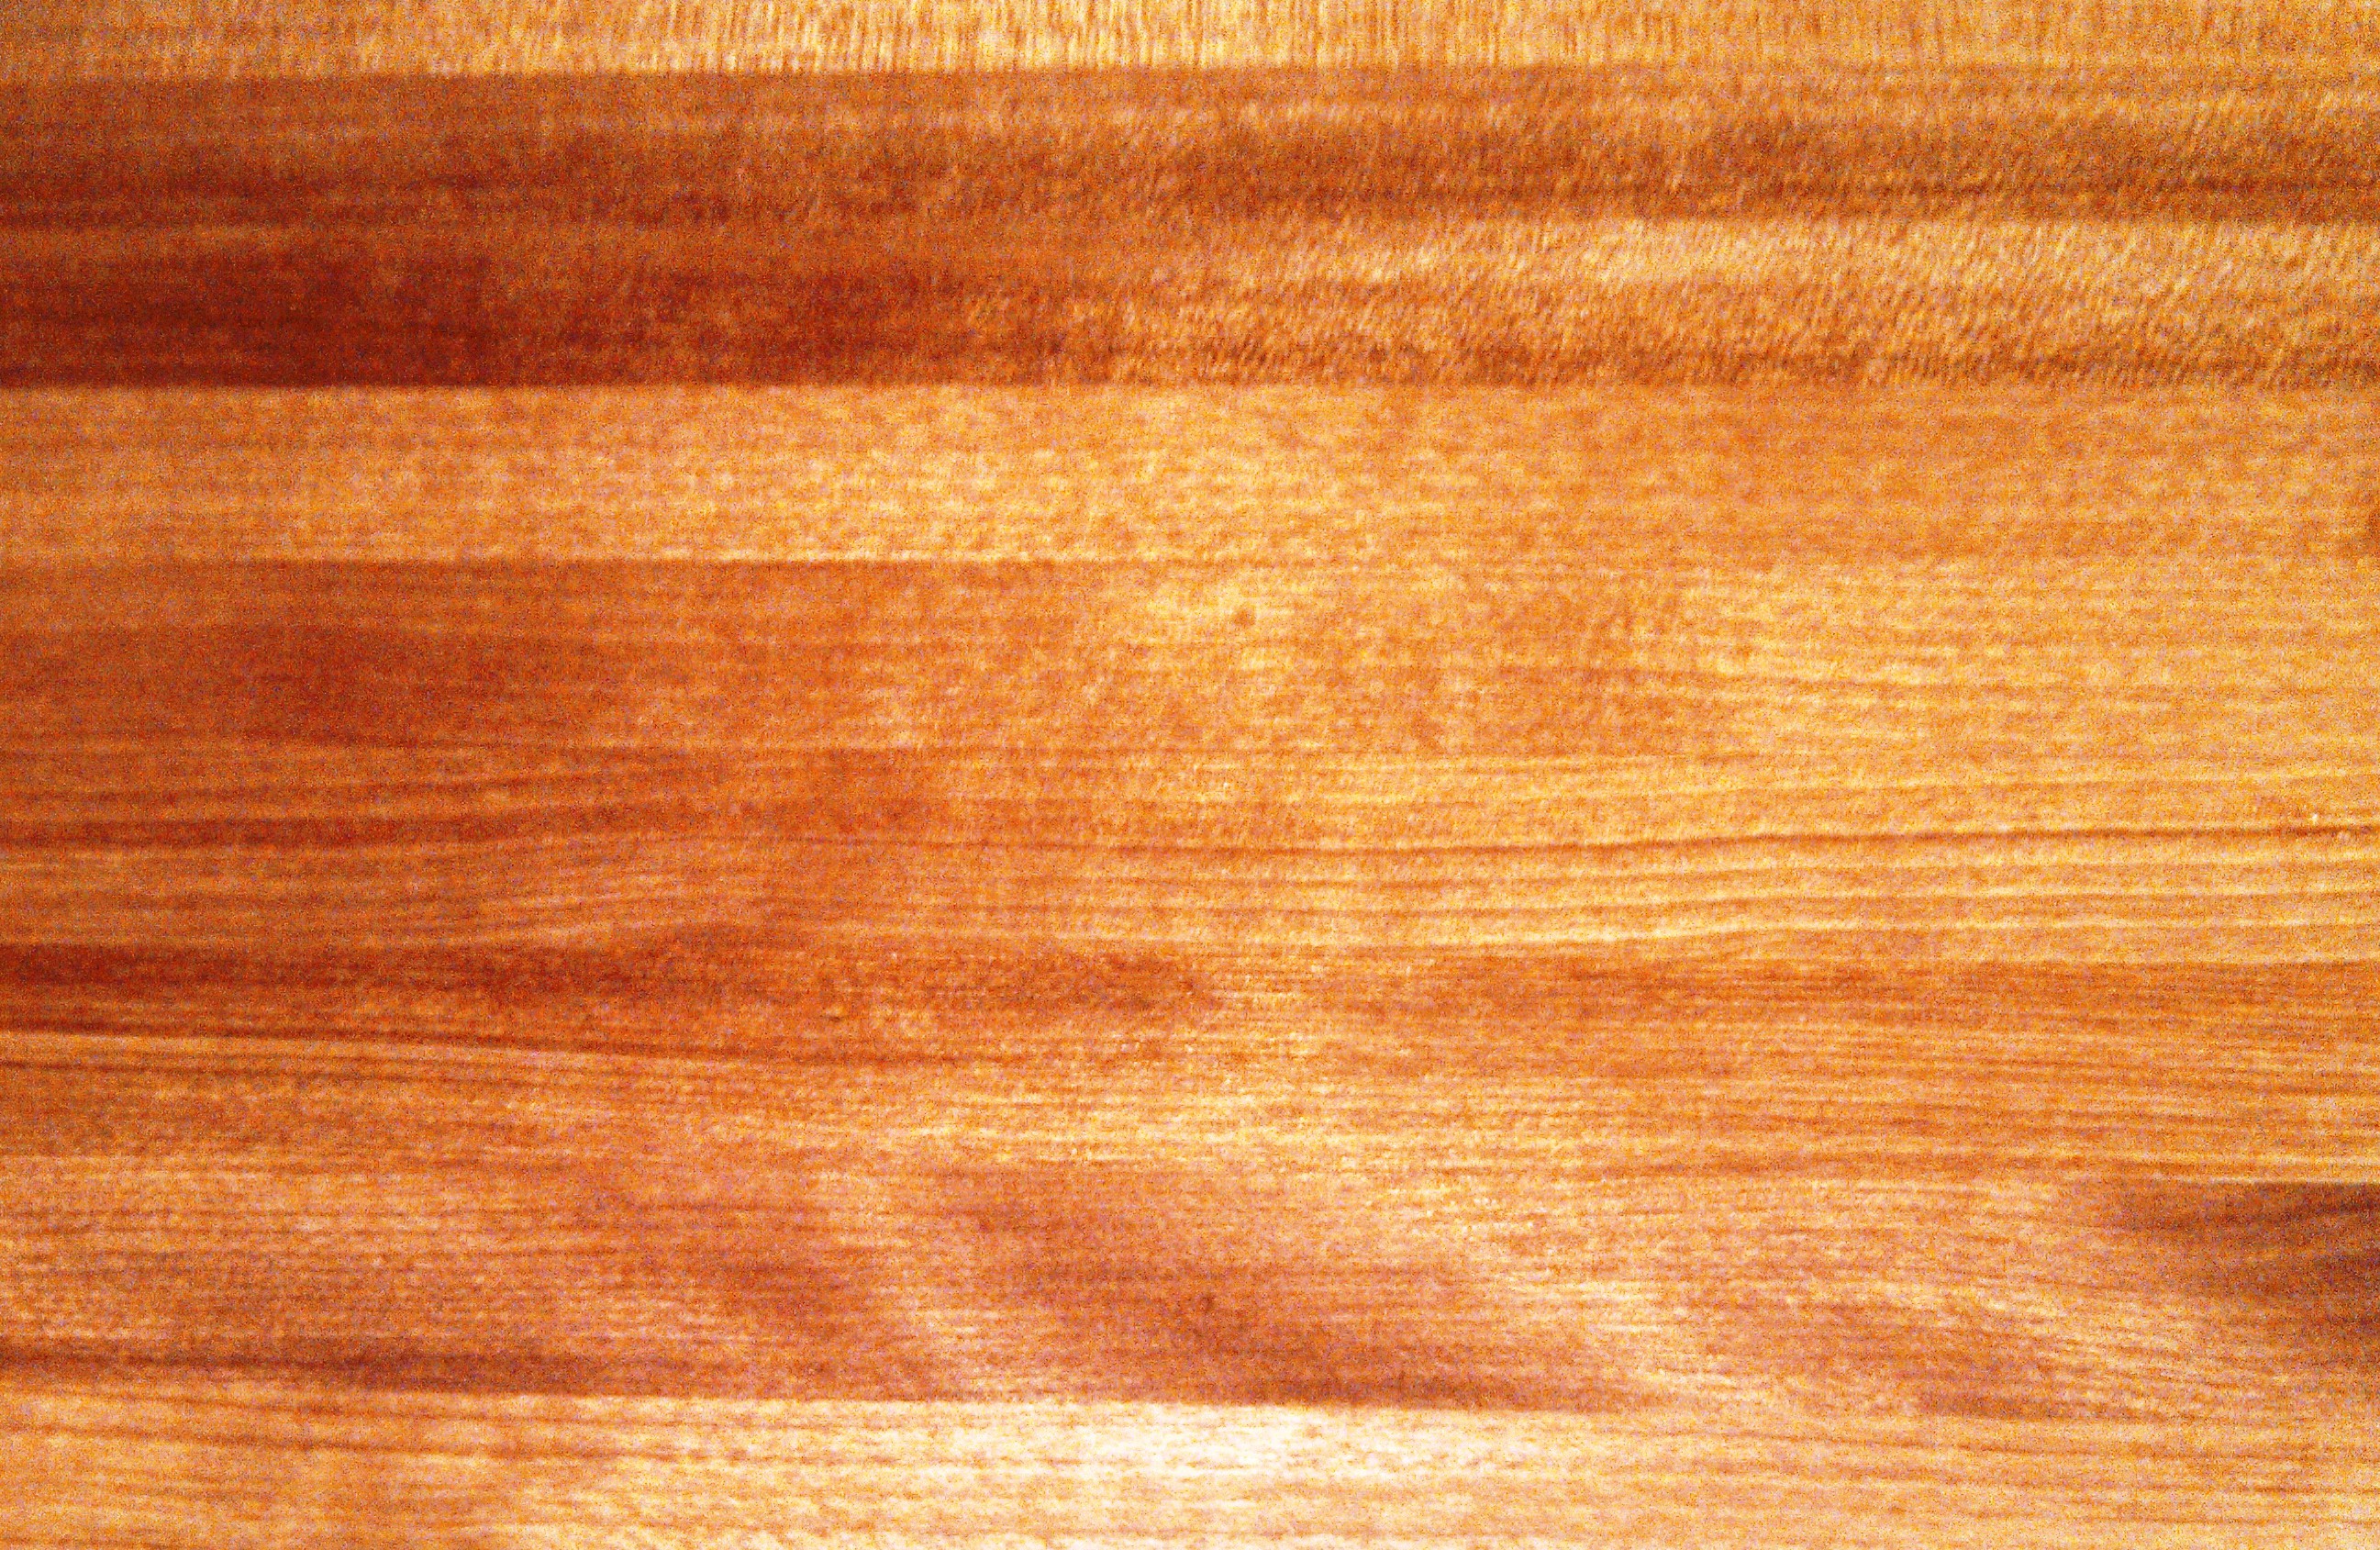 木板壁紙,木材,広葉樹,ウッドステイン,ウッドフローリング,ラミネートフローリング